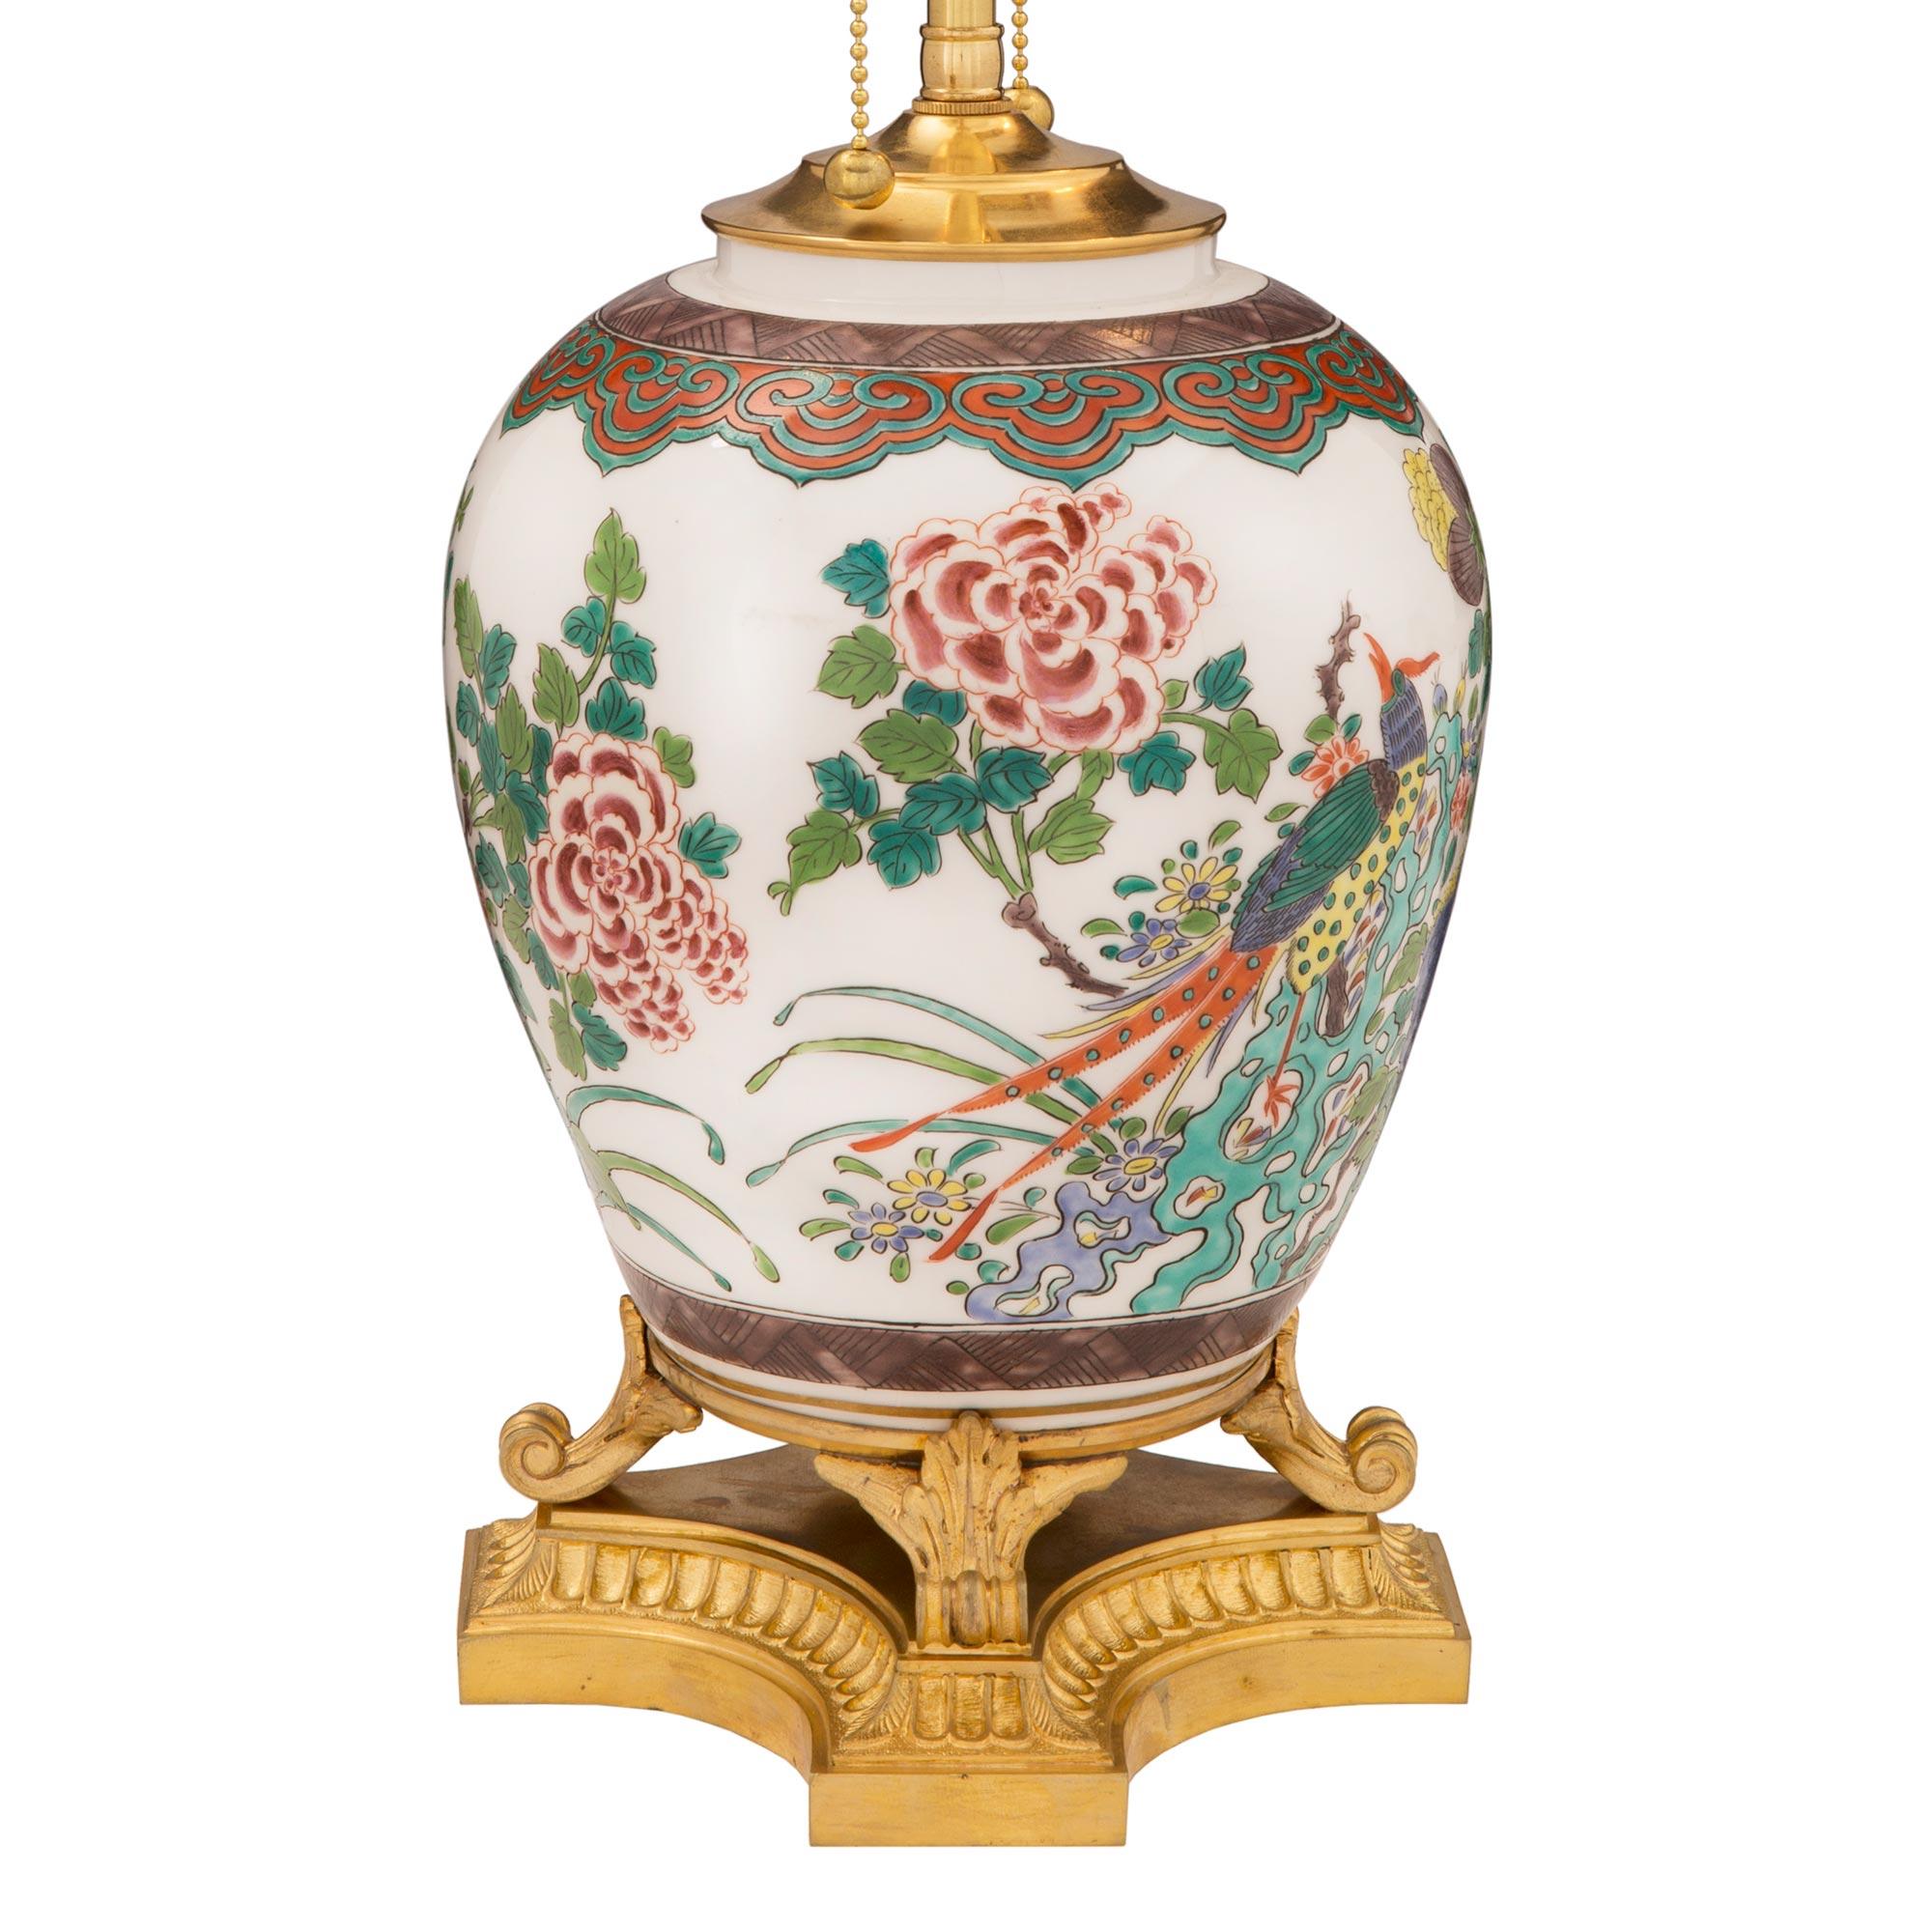 Magnifique lampe en porcelaine Famille Verte d'exportation chinoise du 19ème siècle avec des montures en bronze doré de style Louis XVI du 19ème siècle. La lampe repose sur une très élégante base en bronze doré aux côtés concaves, avec un fin motif